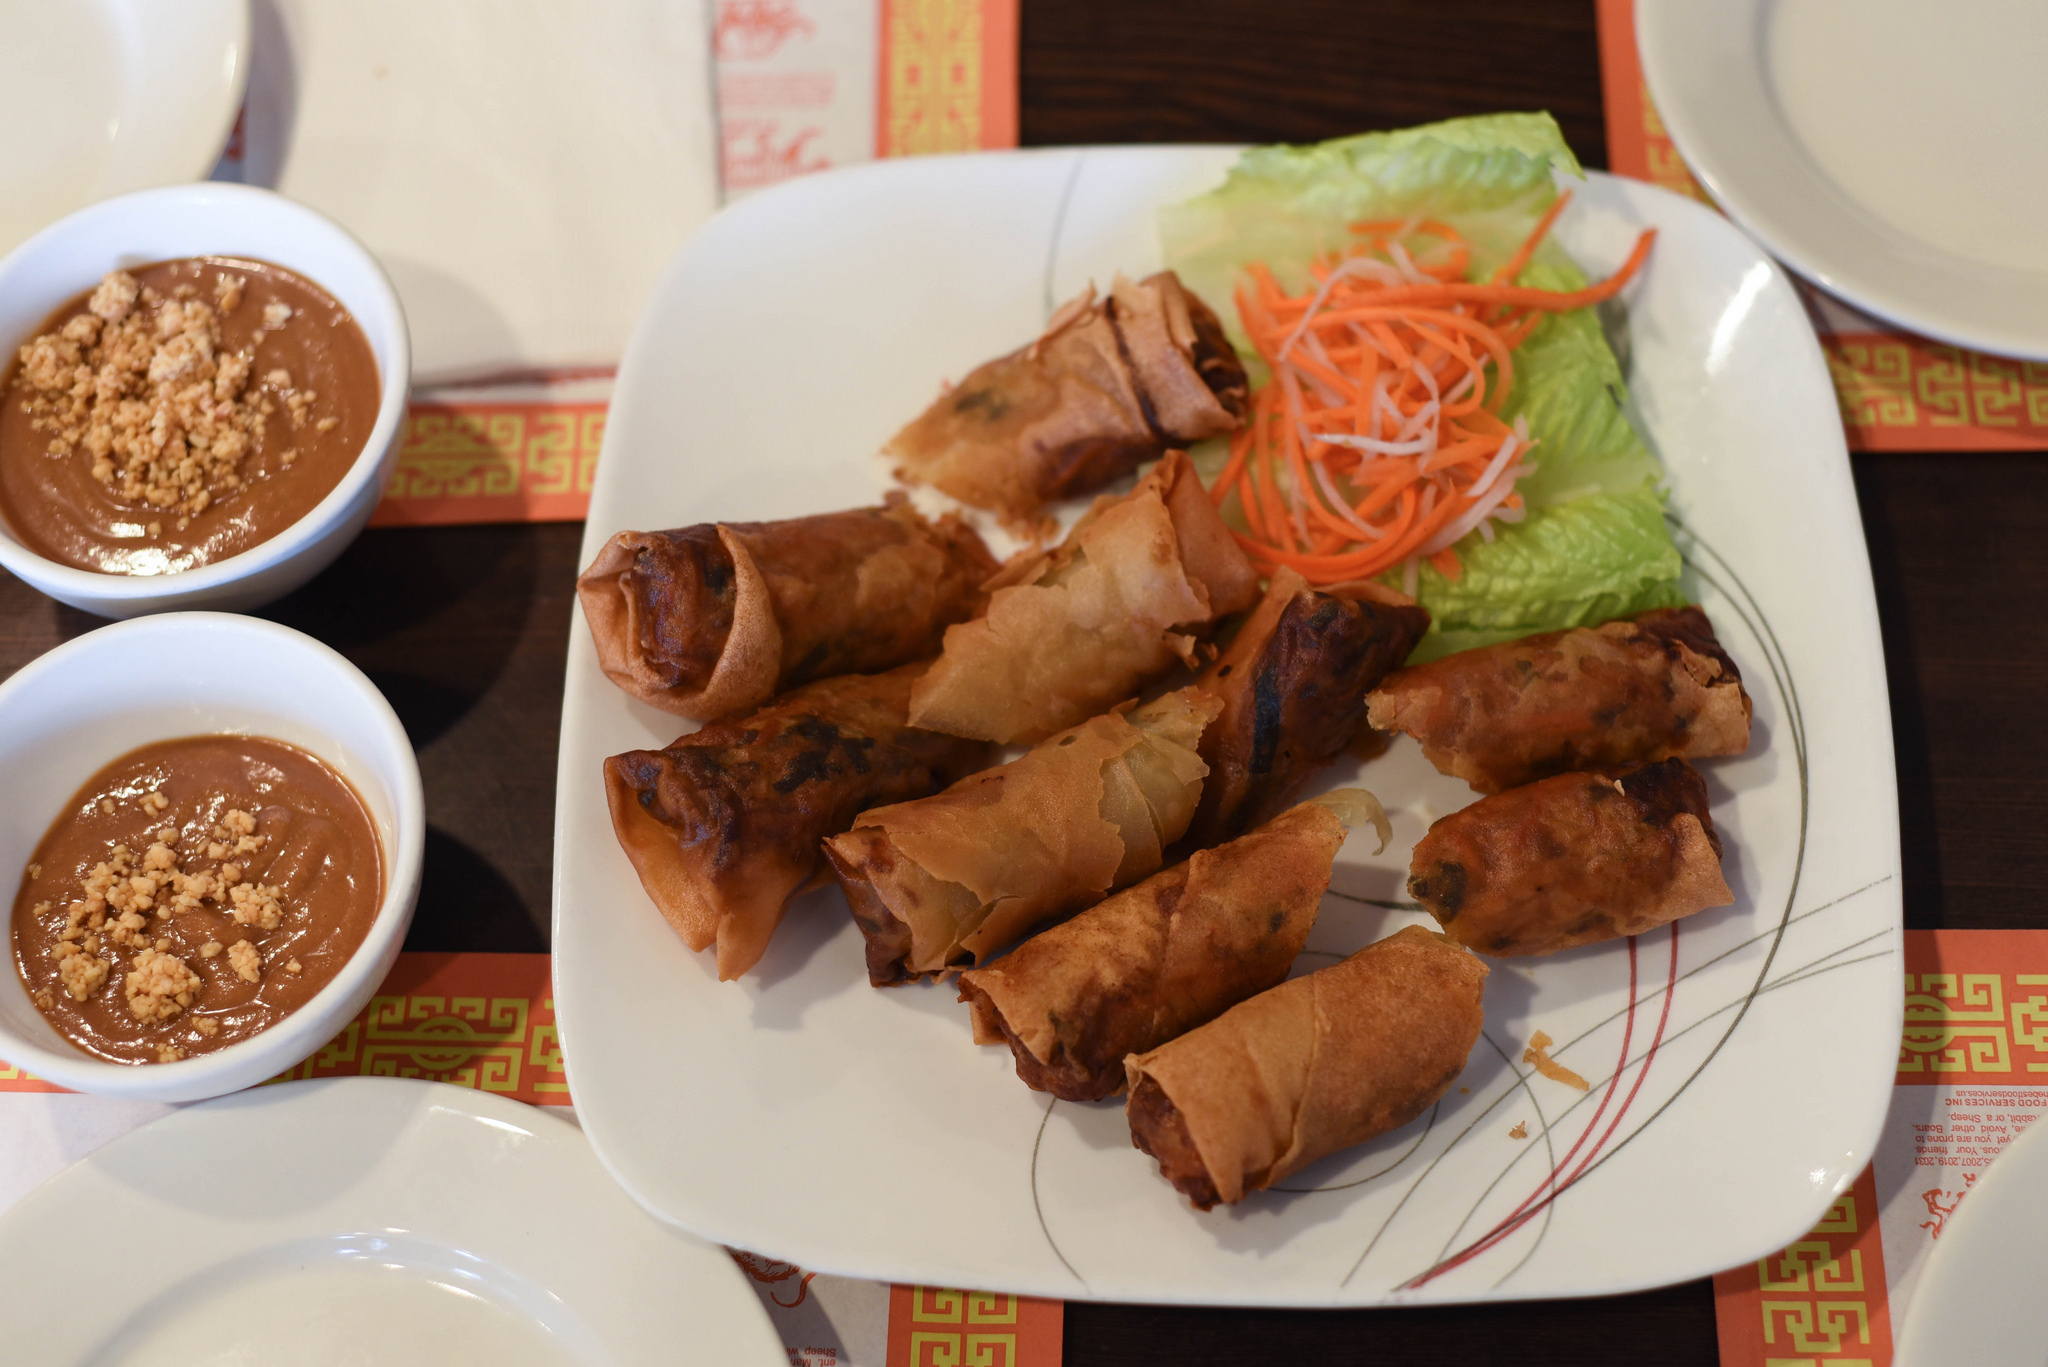 Food at Pho Saigon